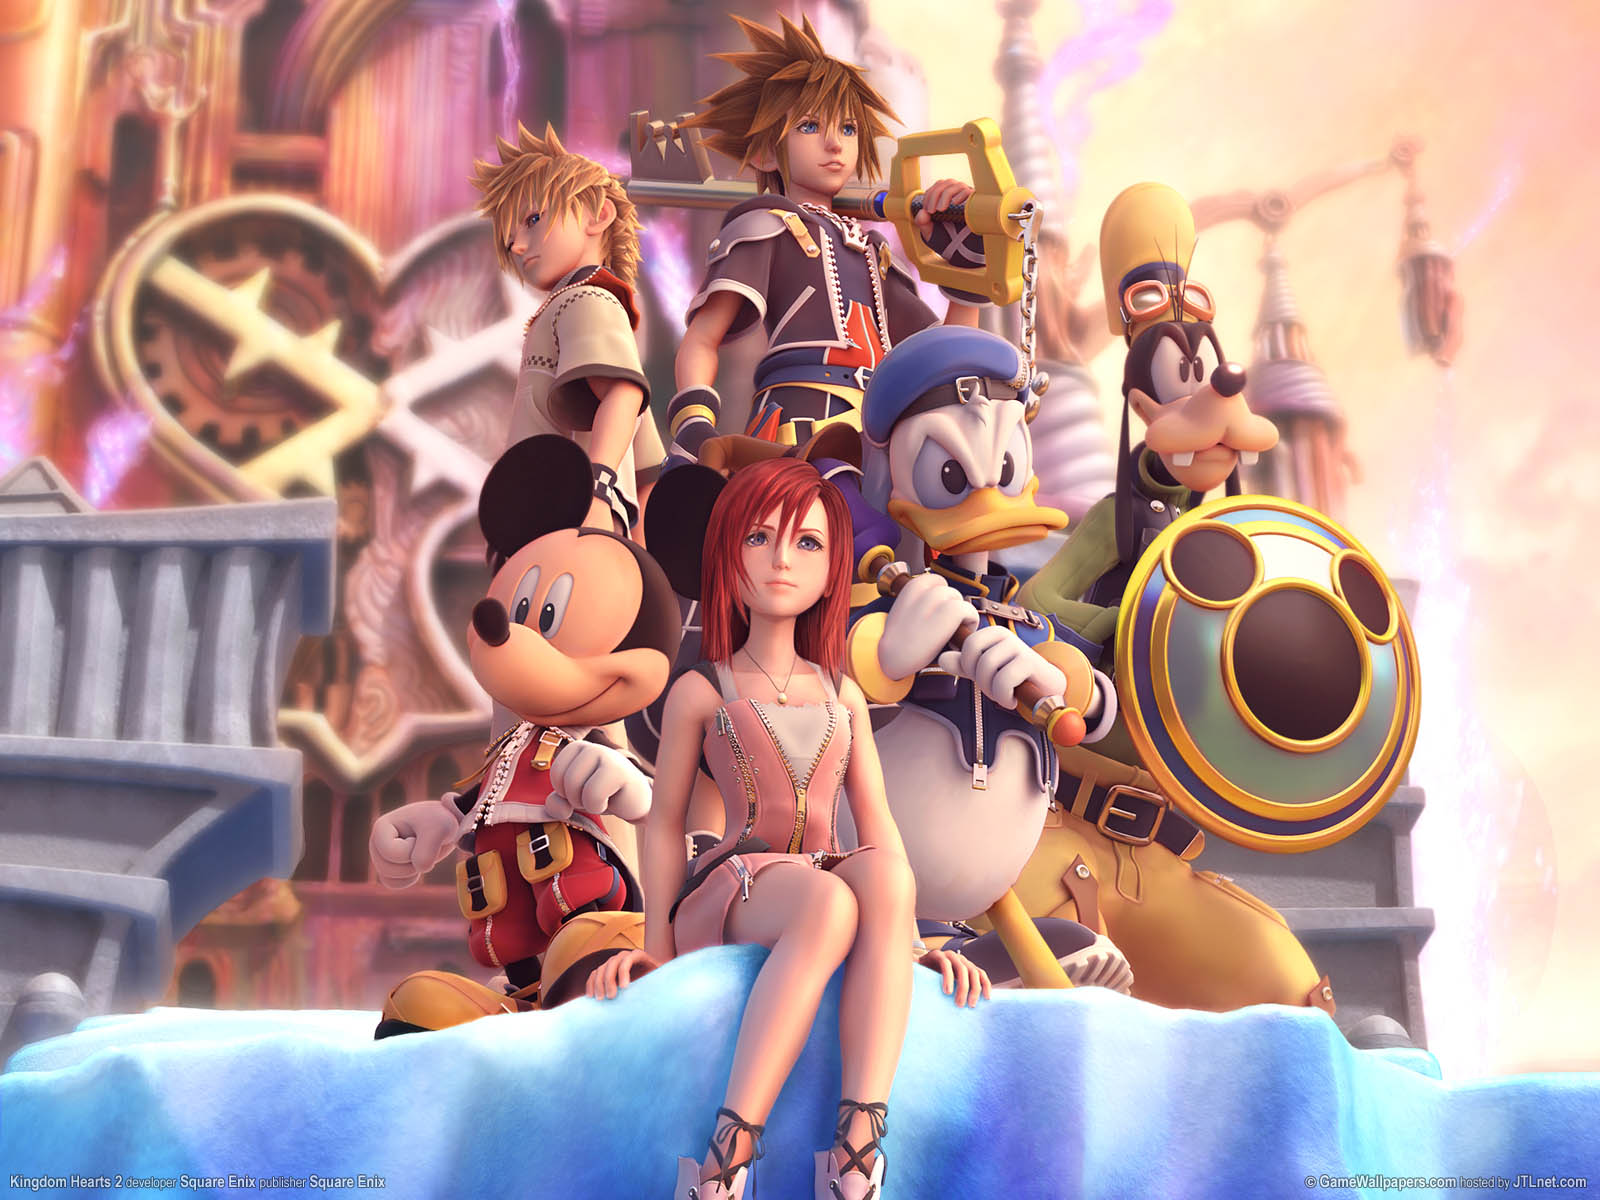 Kingdom Hearts 2 wallpaper 01 1600x1200